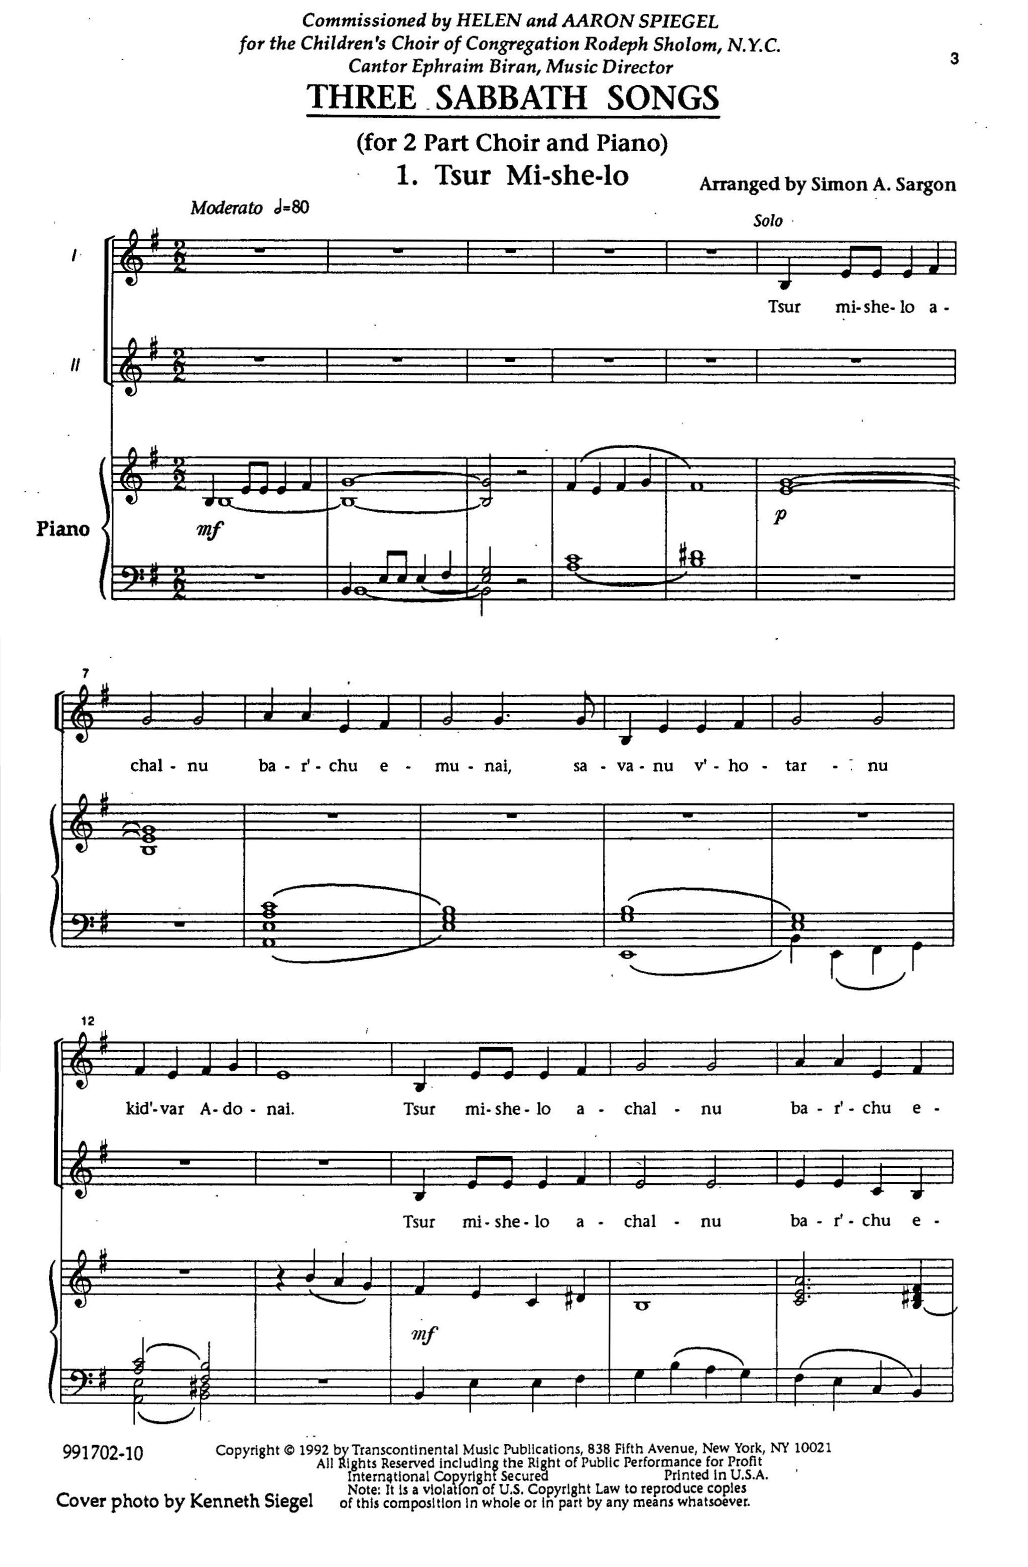 Simon Sargon Three Sabbath Songs Sheet Music Notes & Chords for 2-Part Choir - Download or Print PDF